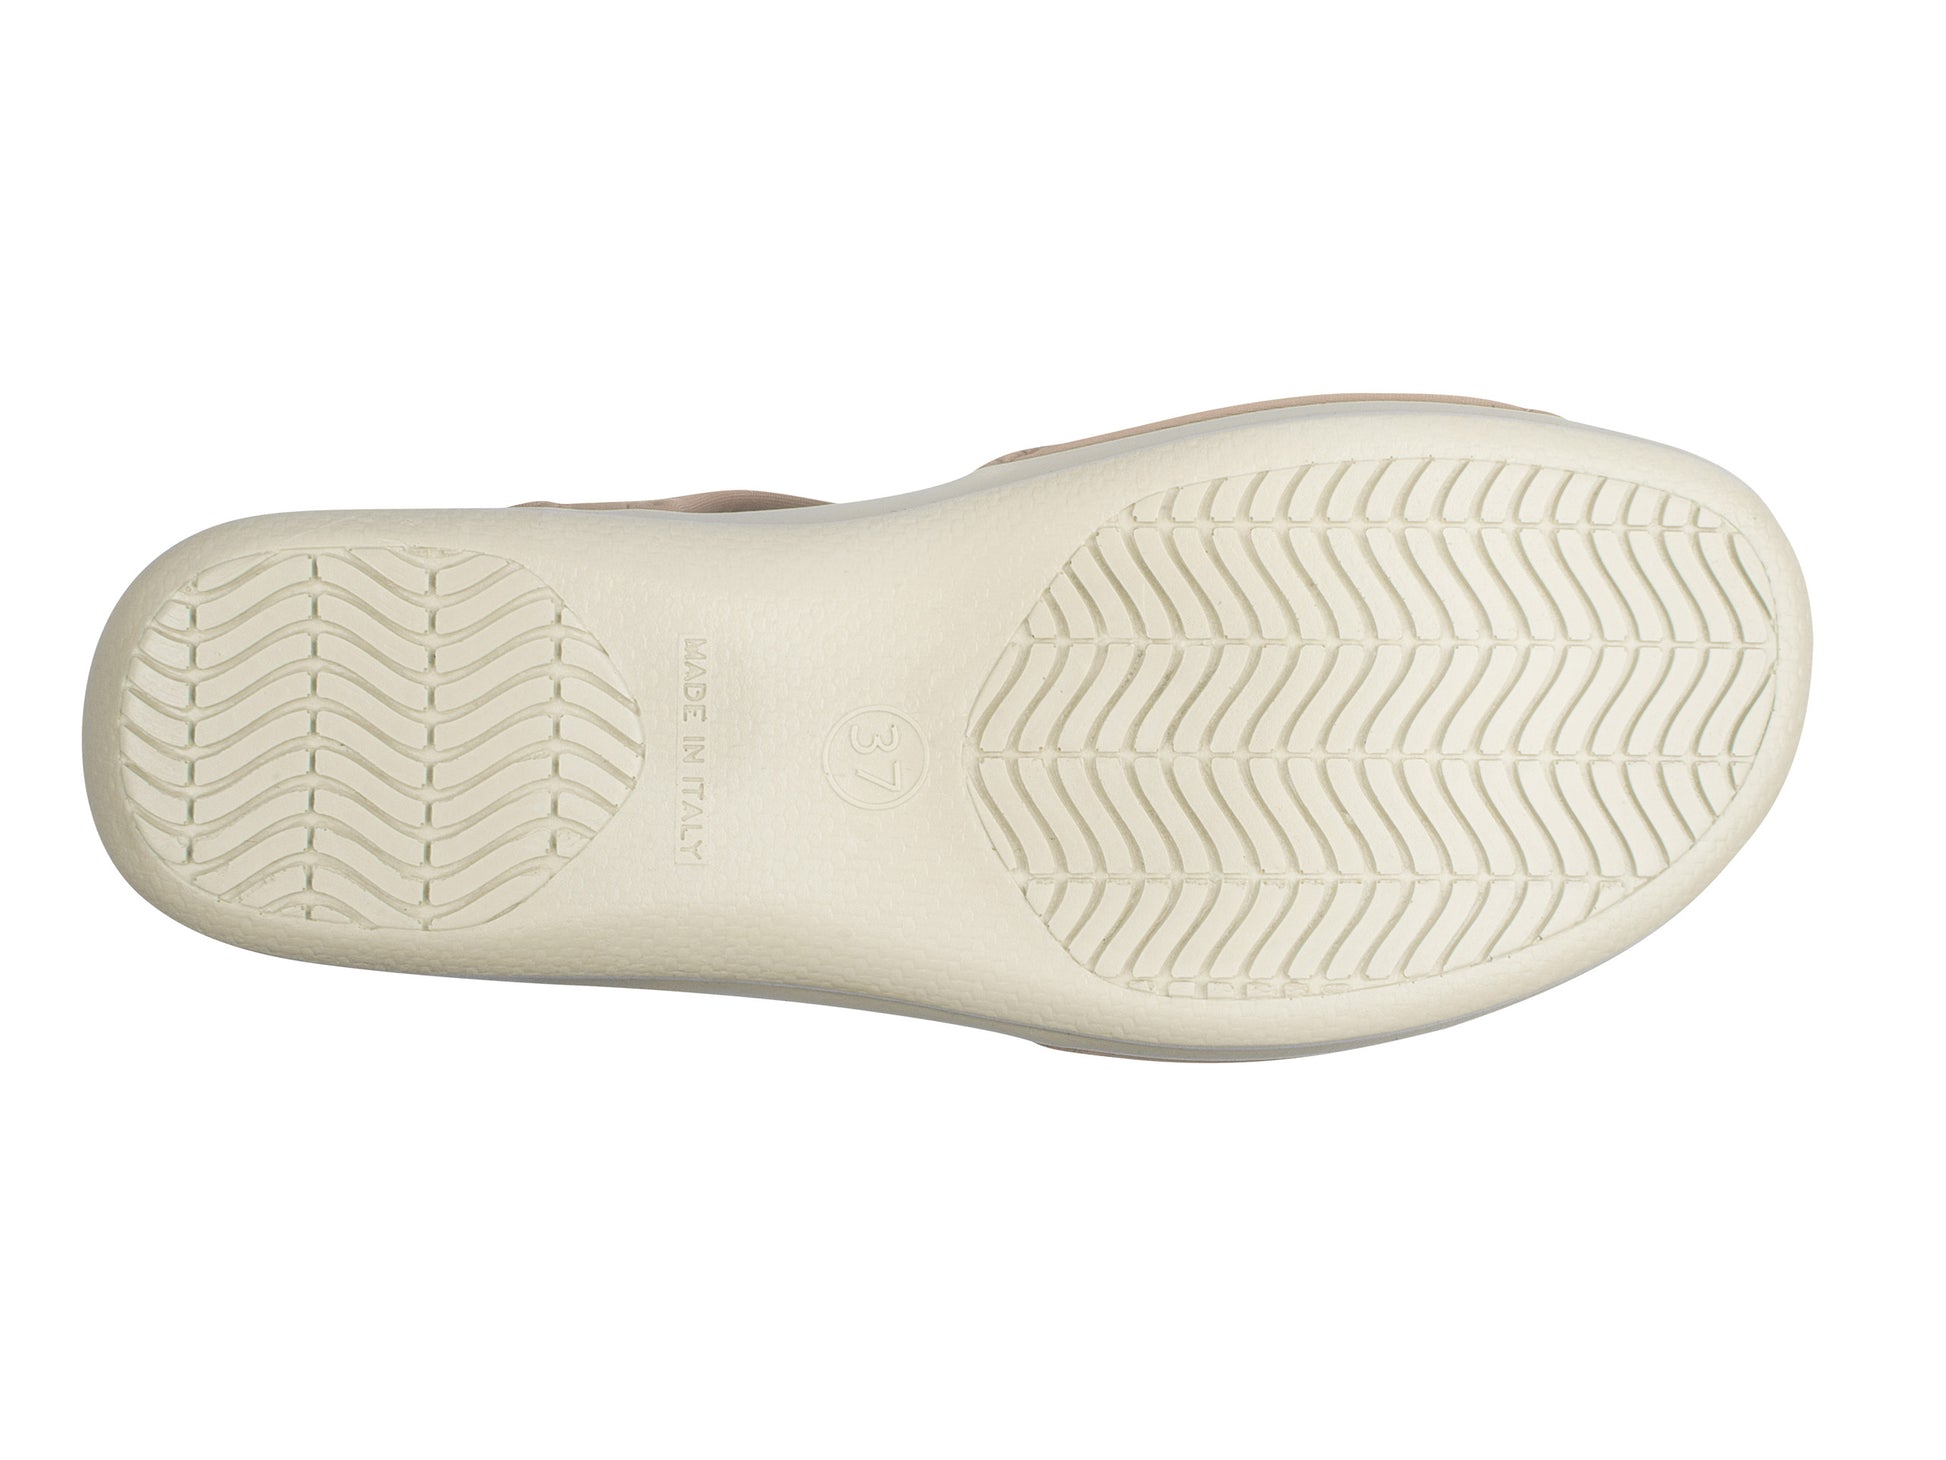 Die Sohle der Damen Stretch Sandalette Modell Stretch 05 von Aerosoft in Farbe beige